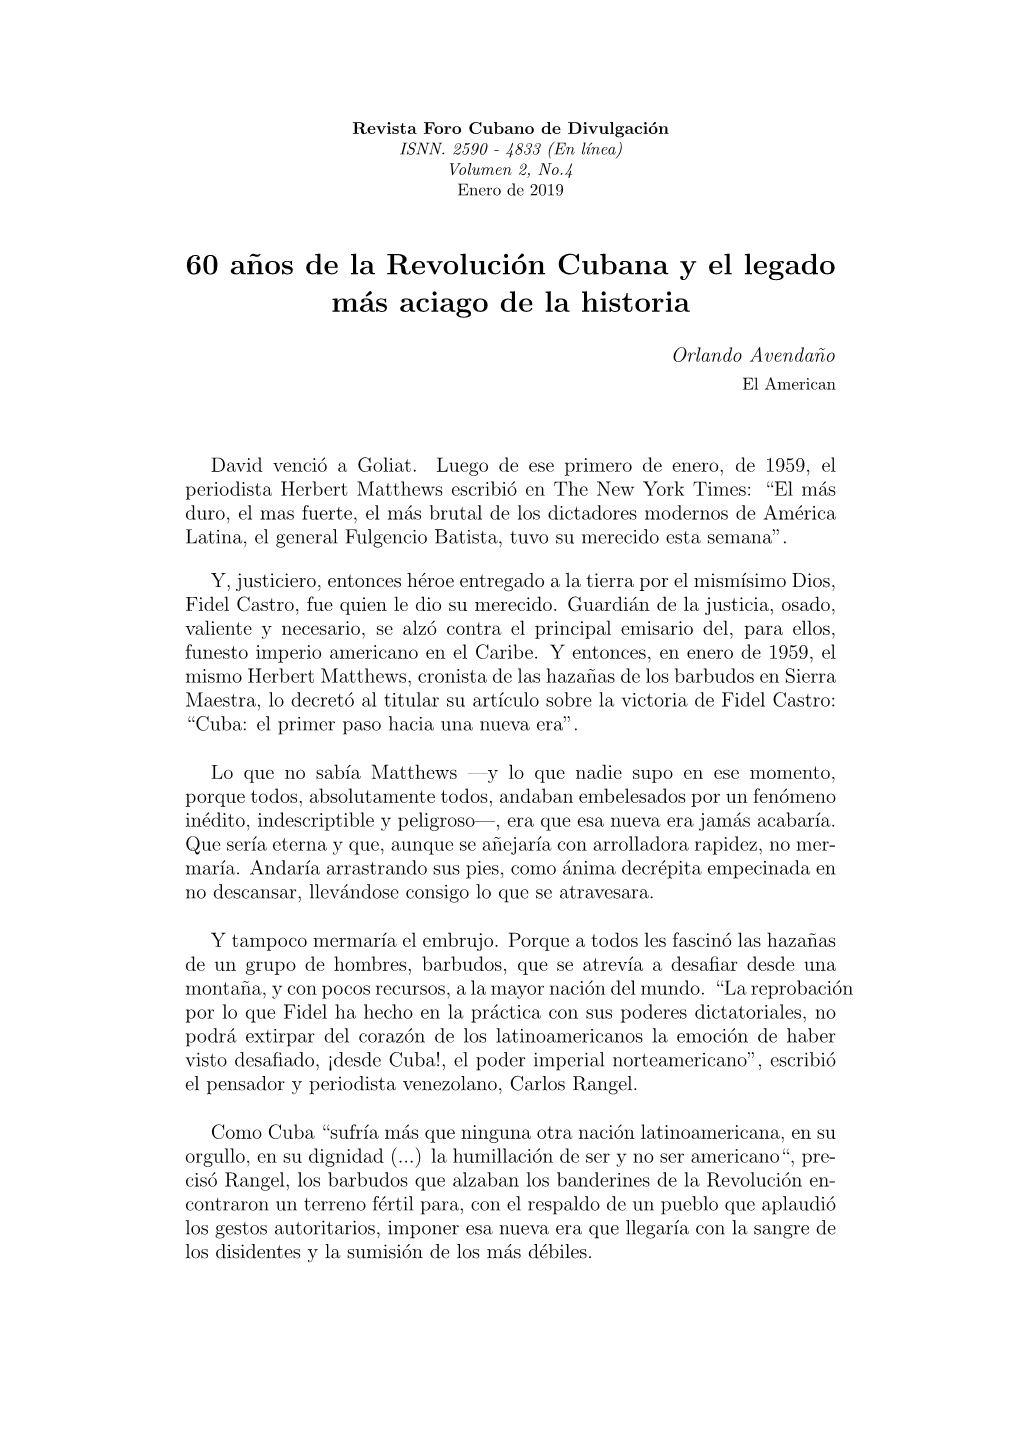 60 A˜Nos De La Revolución Cubana Y El Legado Más Aciago De La Historia